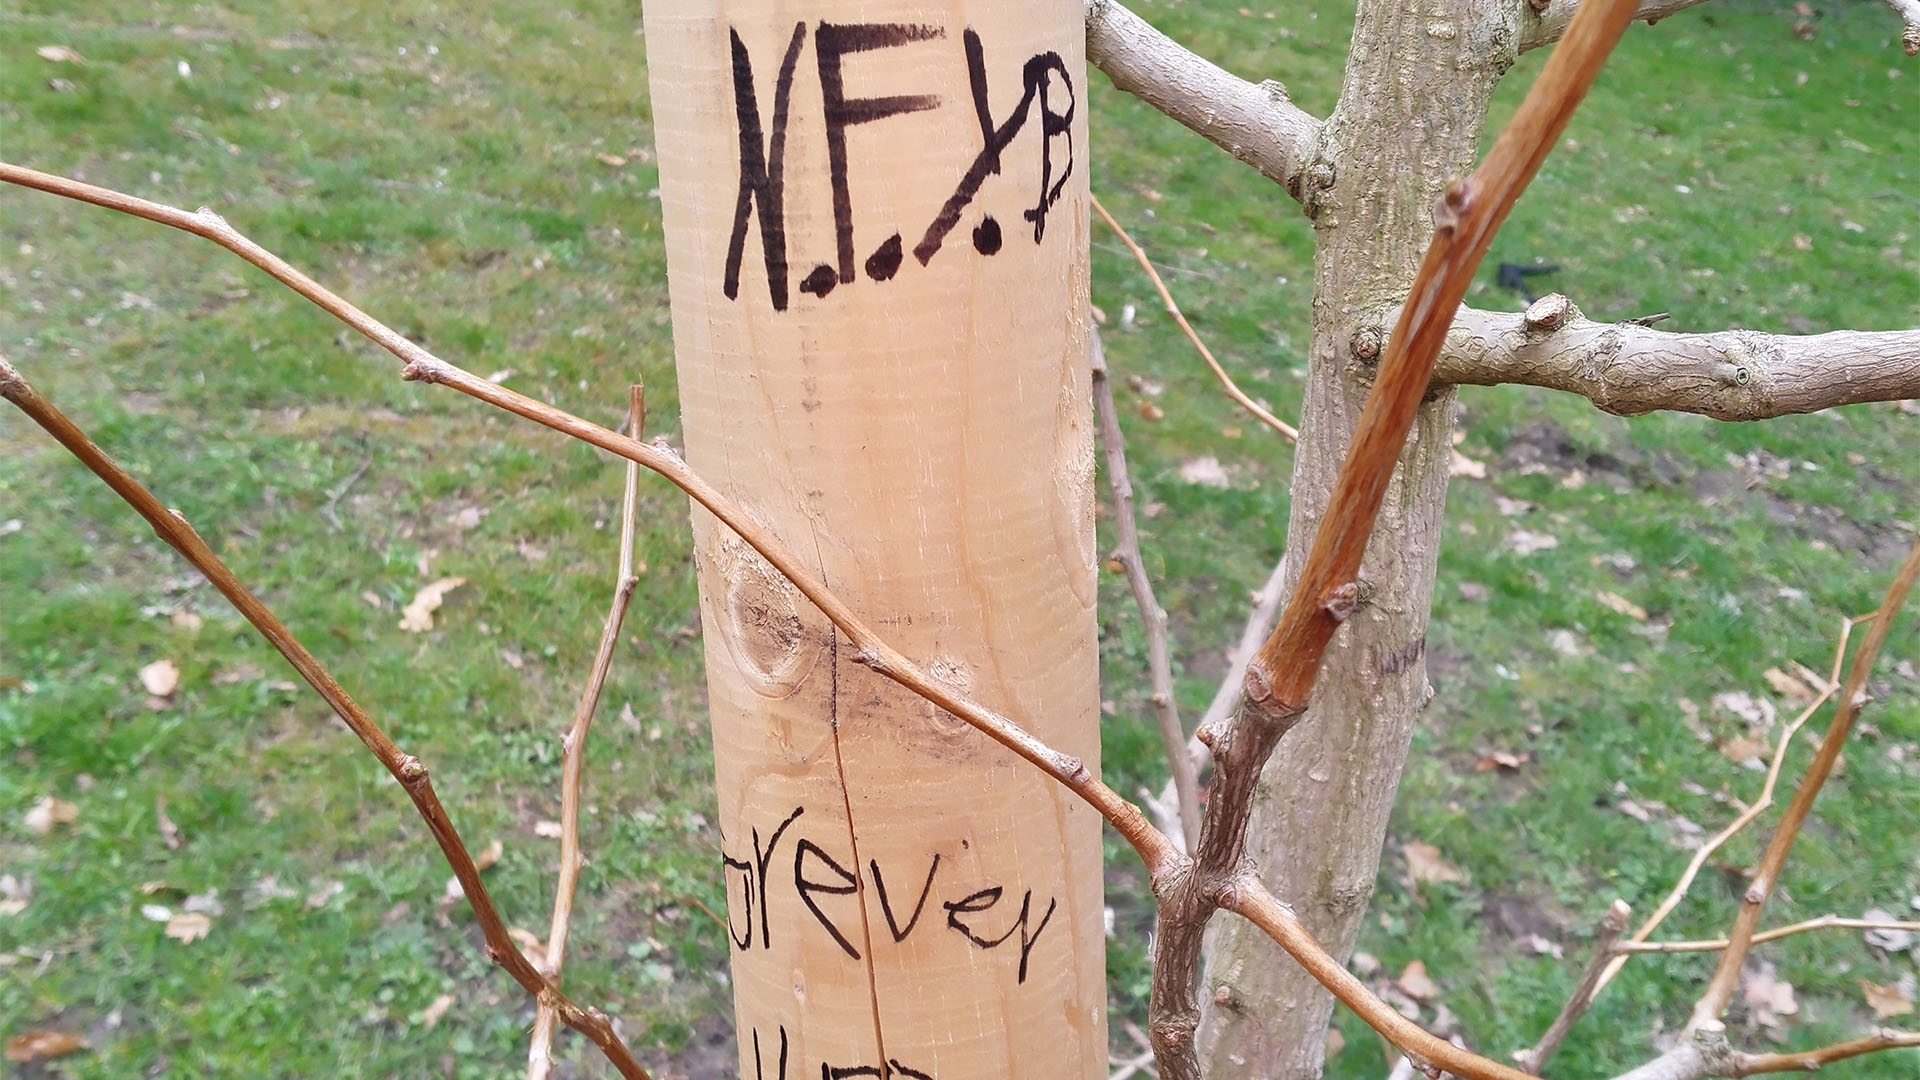 Ein Stützpfeiler an einem jungen Baum wurde mit Initialen und Worten beschriftet.